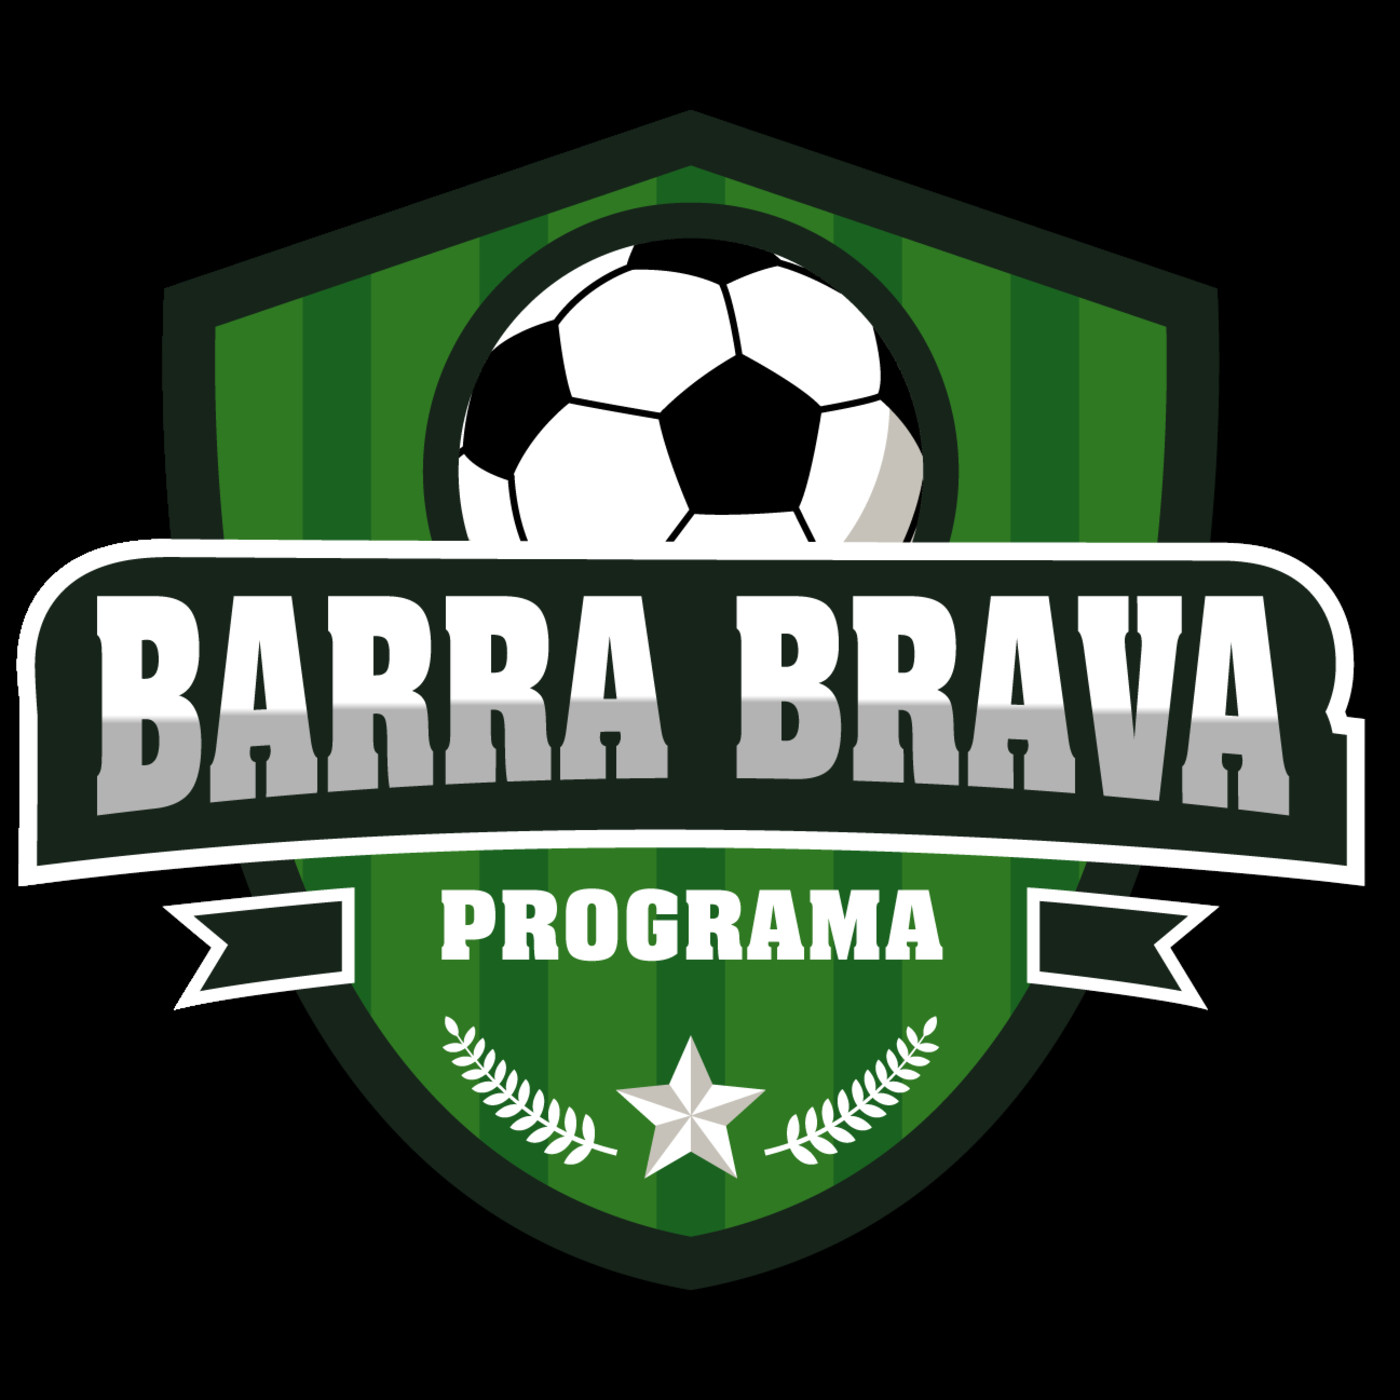 17. Podcast BARRA BRAVA Programa 5 de agosto de 2019